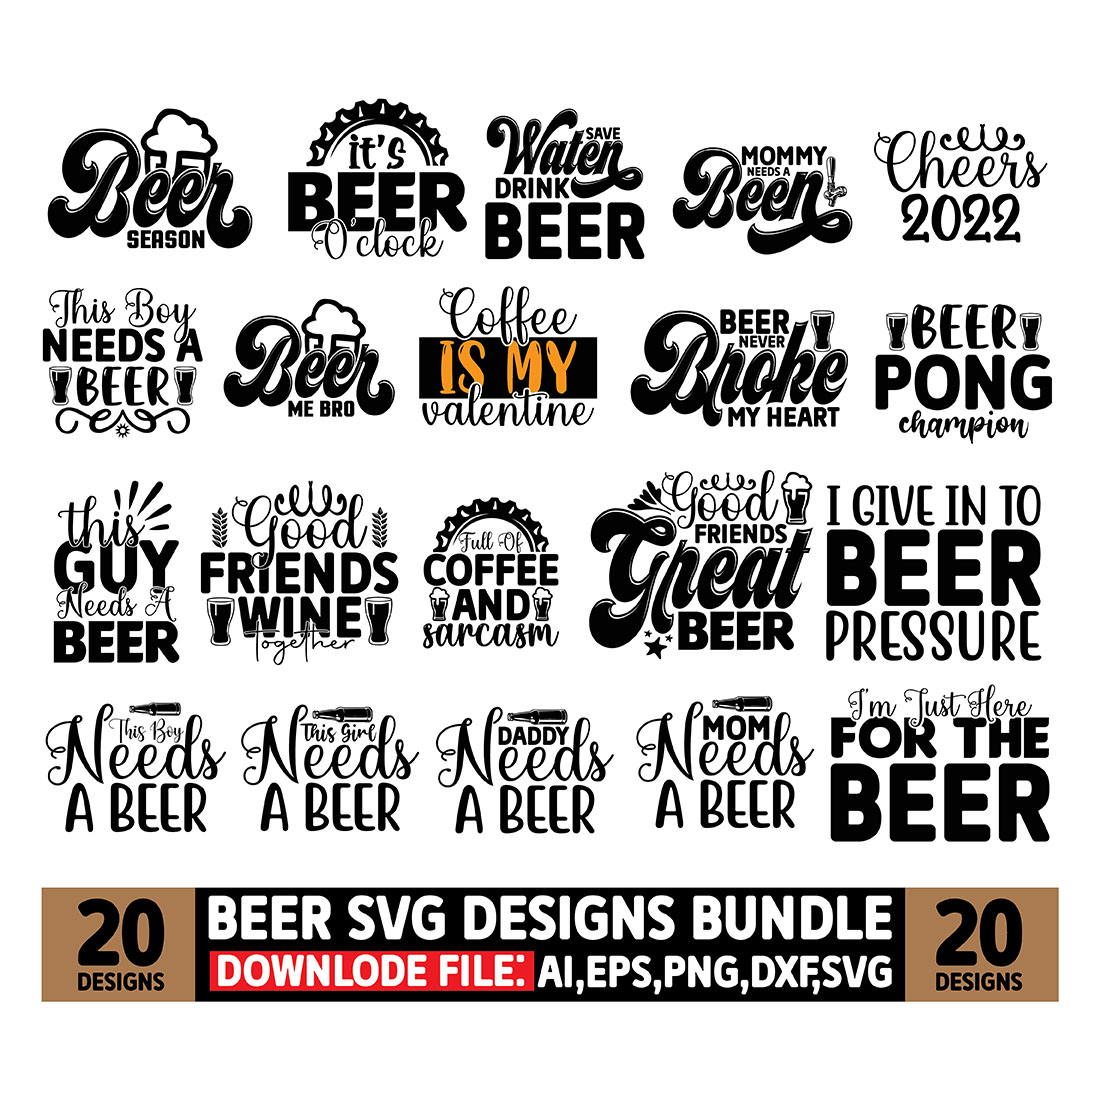 Beer SVG Designs Bundle cover image.